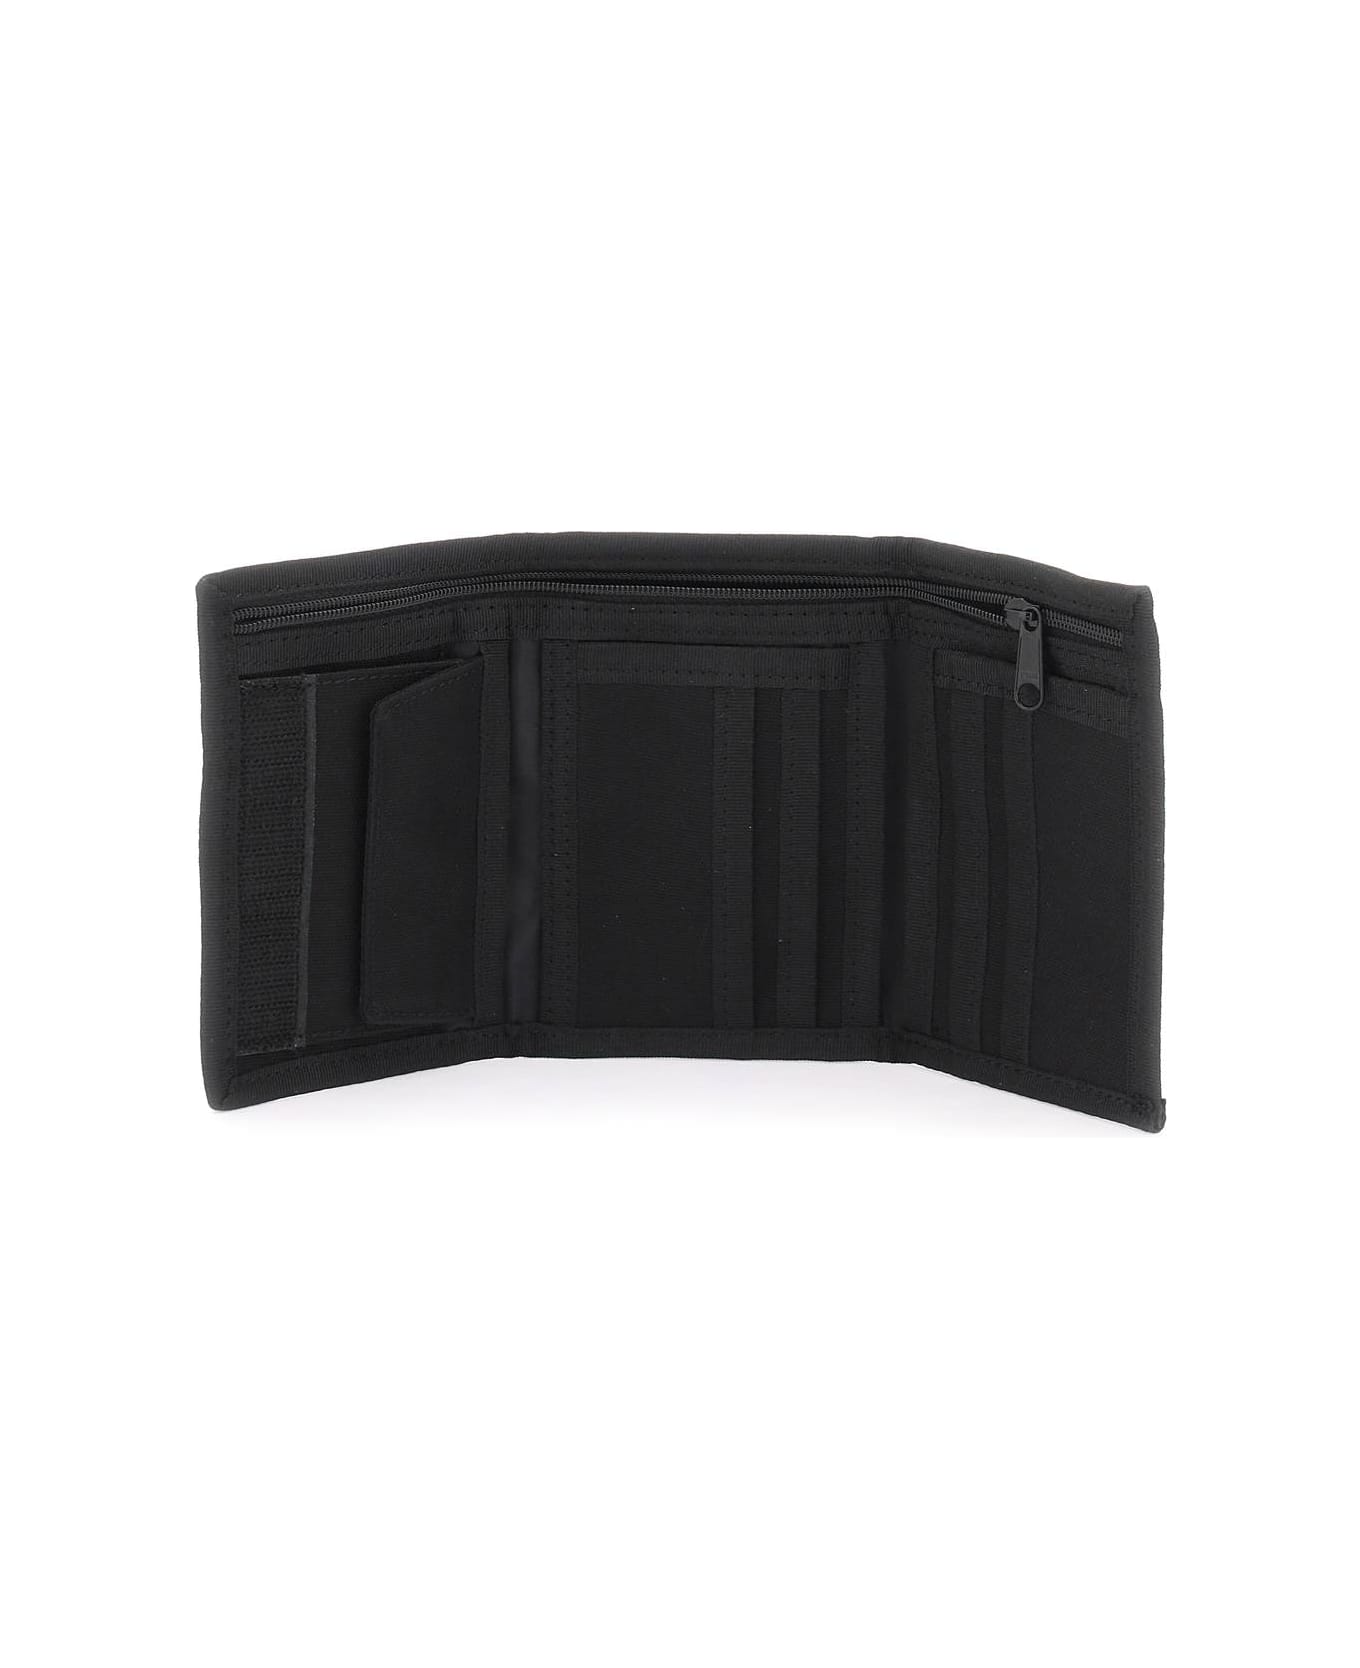 Carhartt 'alec' Tri-fold Wallet - BLACK 財布